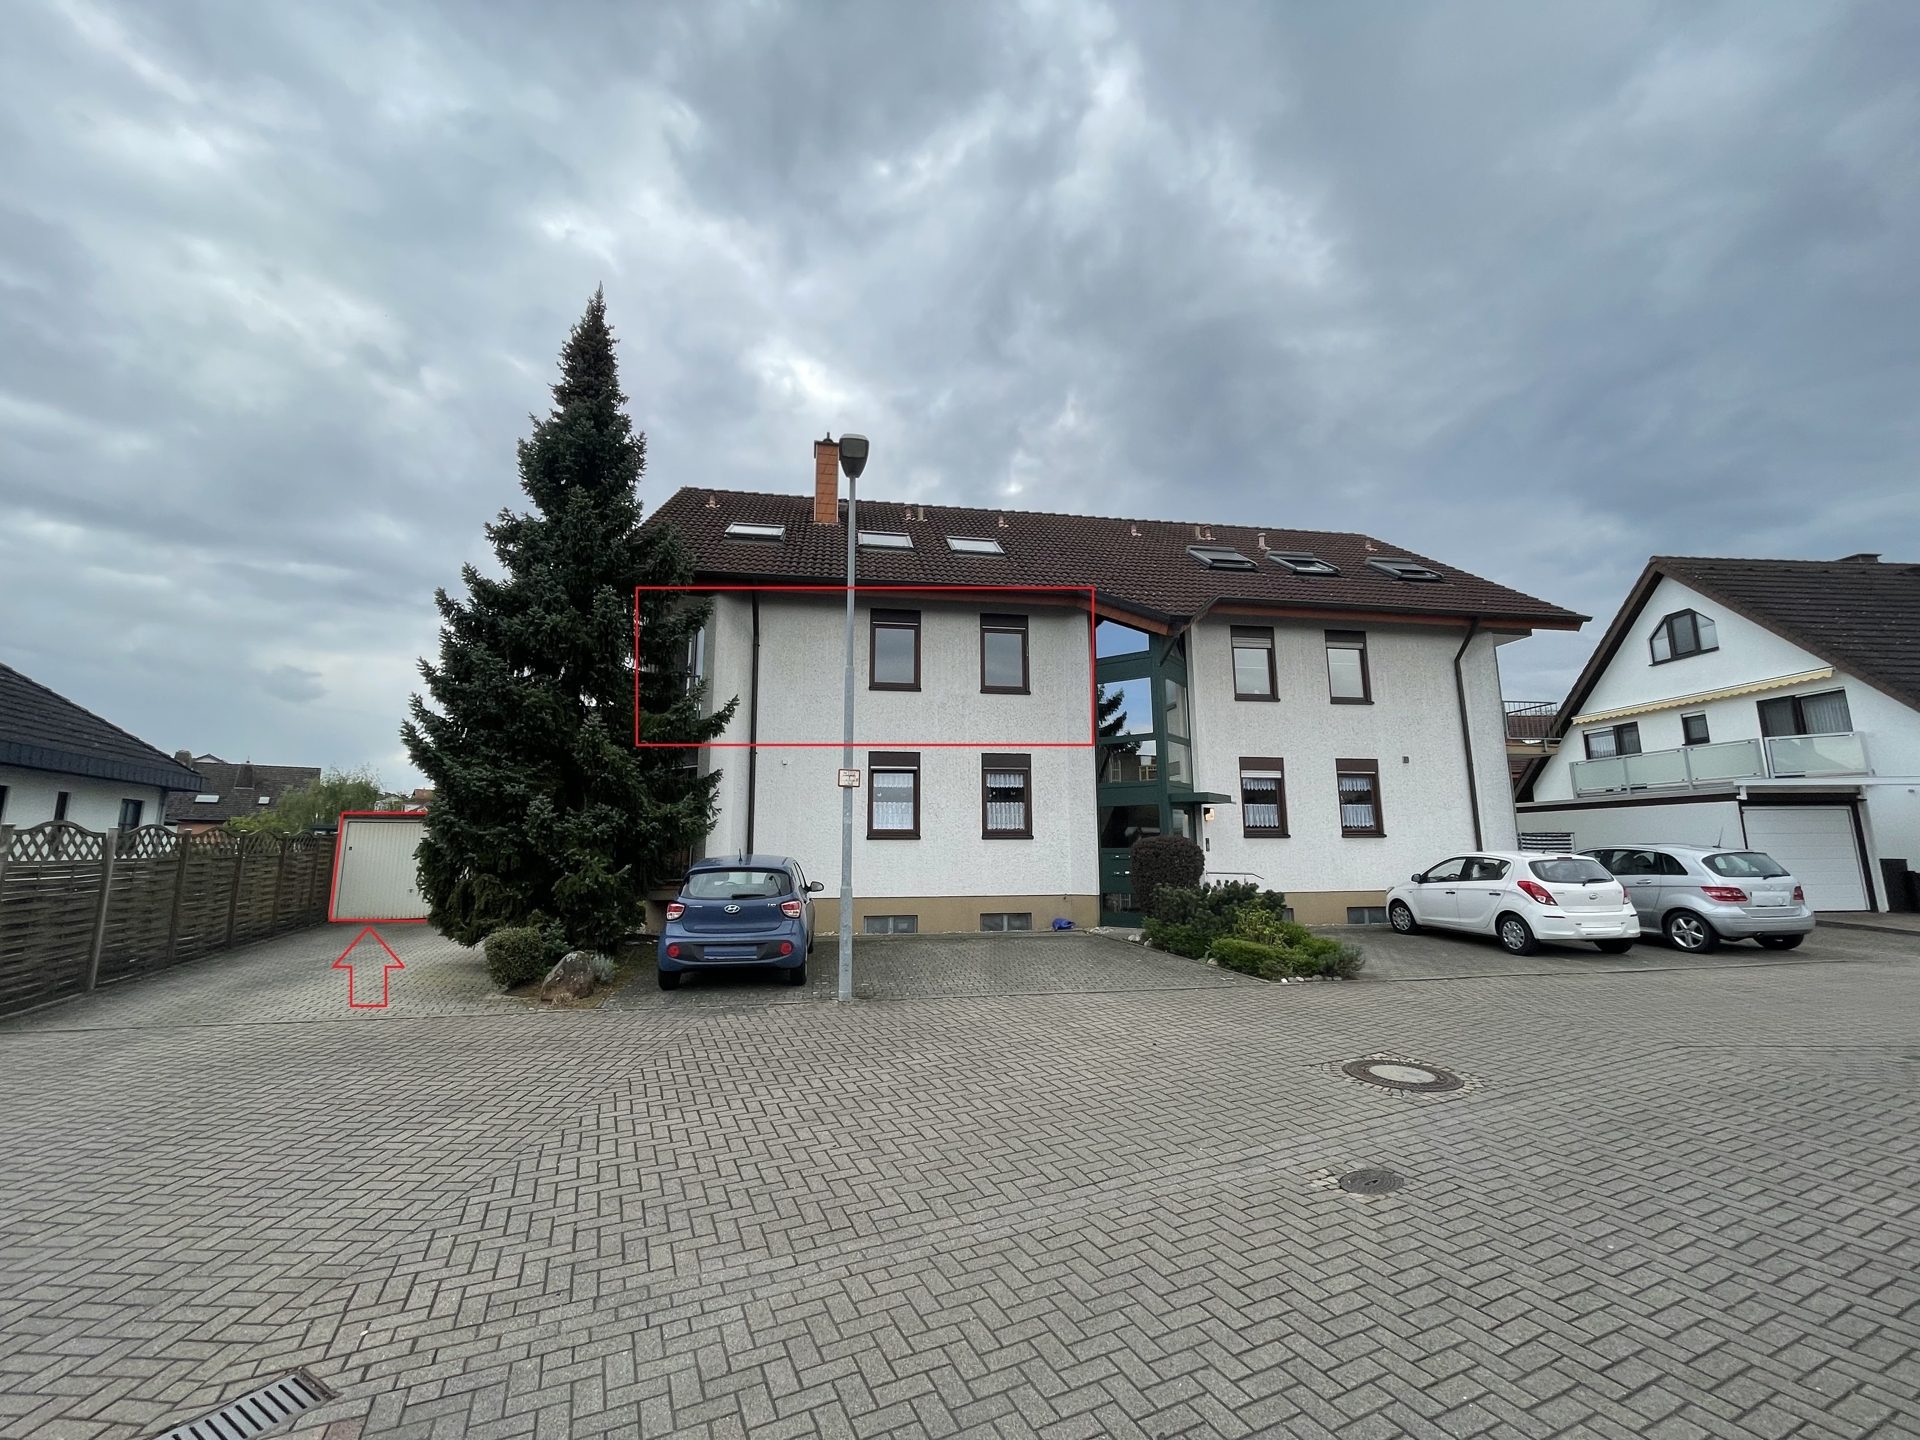 HUST Immobilien GmbH & Co. KG - Immobilienangebot - Sandhausen - Alle - Provisionsfrei! 
Gepflegte 3 Zi.-Whg. im 1. OG mit neuem Bad, zwei Balkone & Garage in Sandhausen!